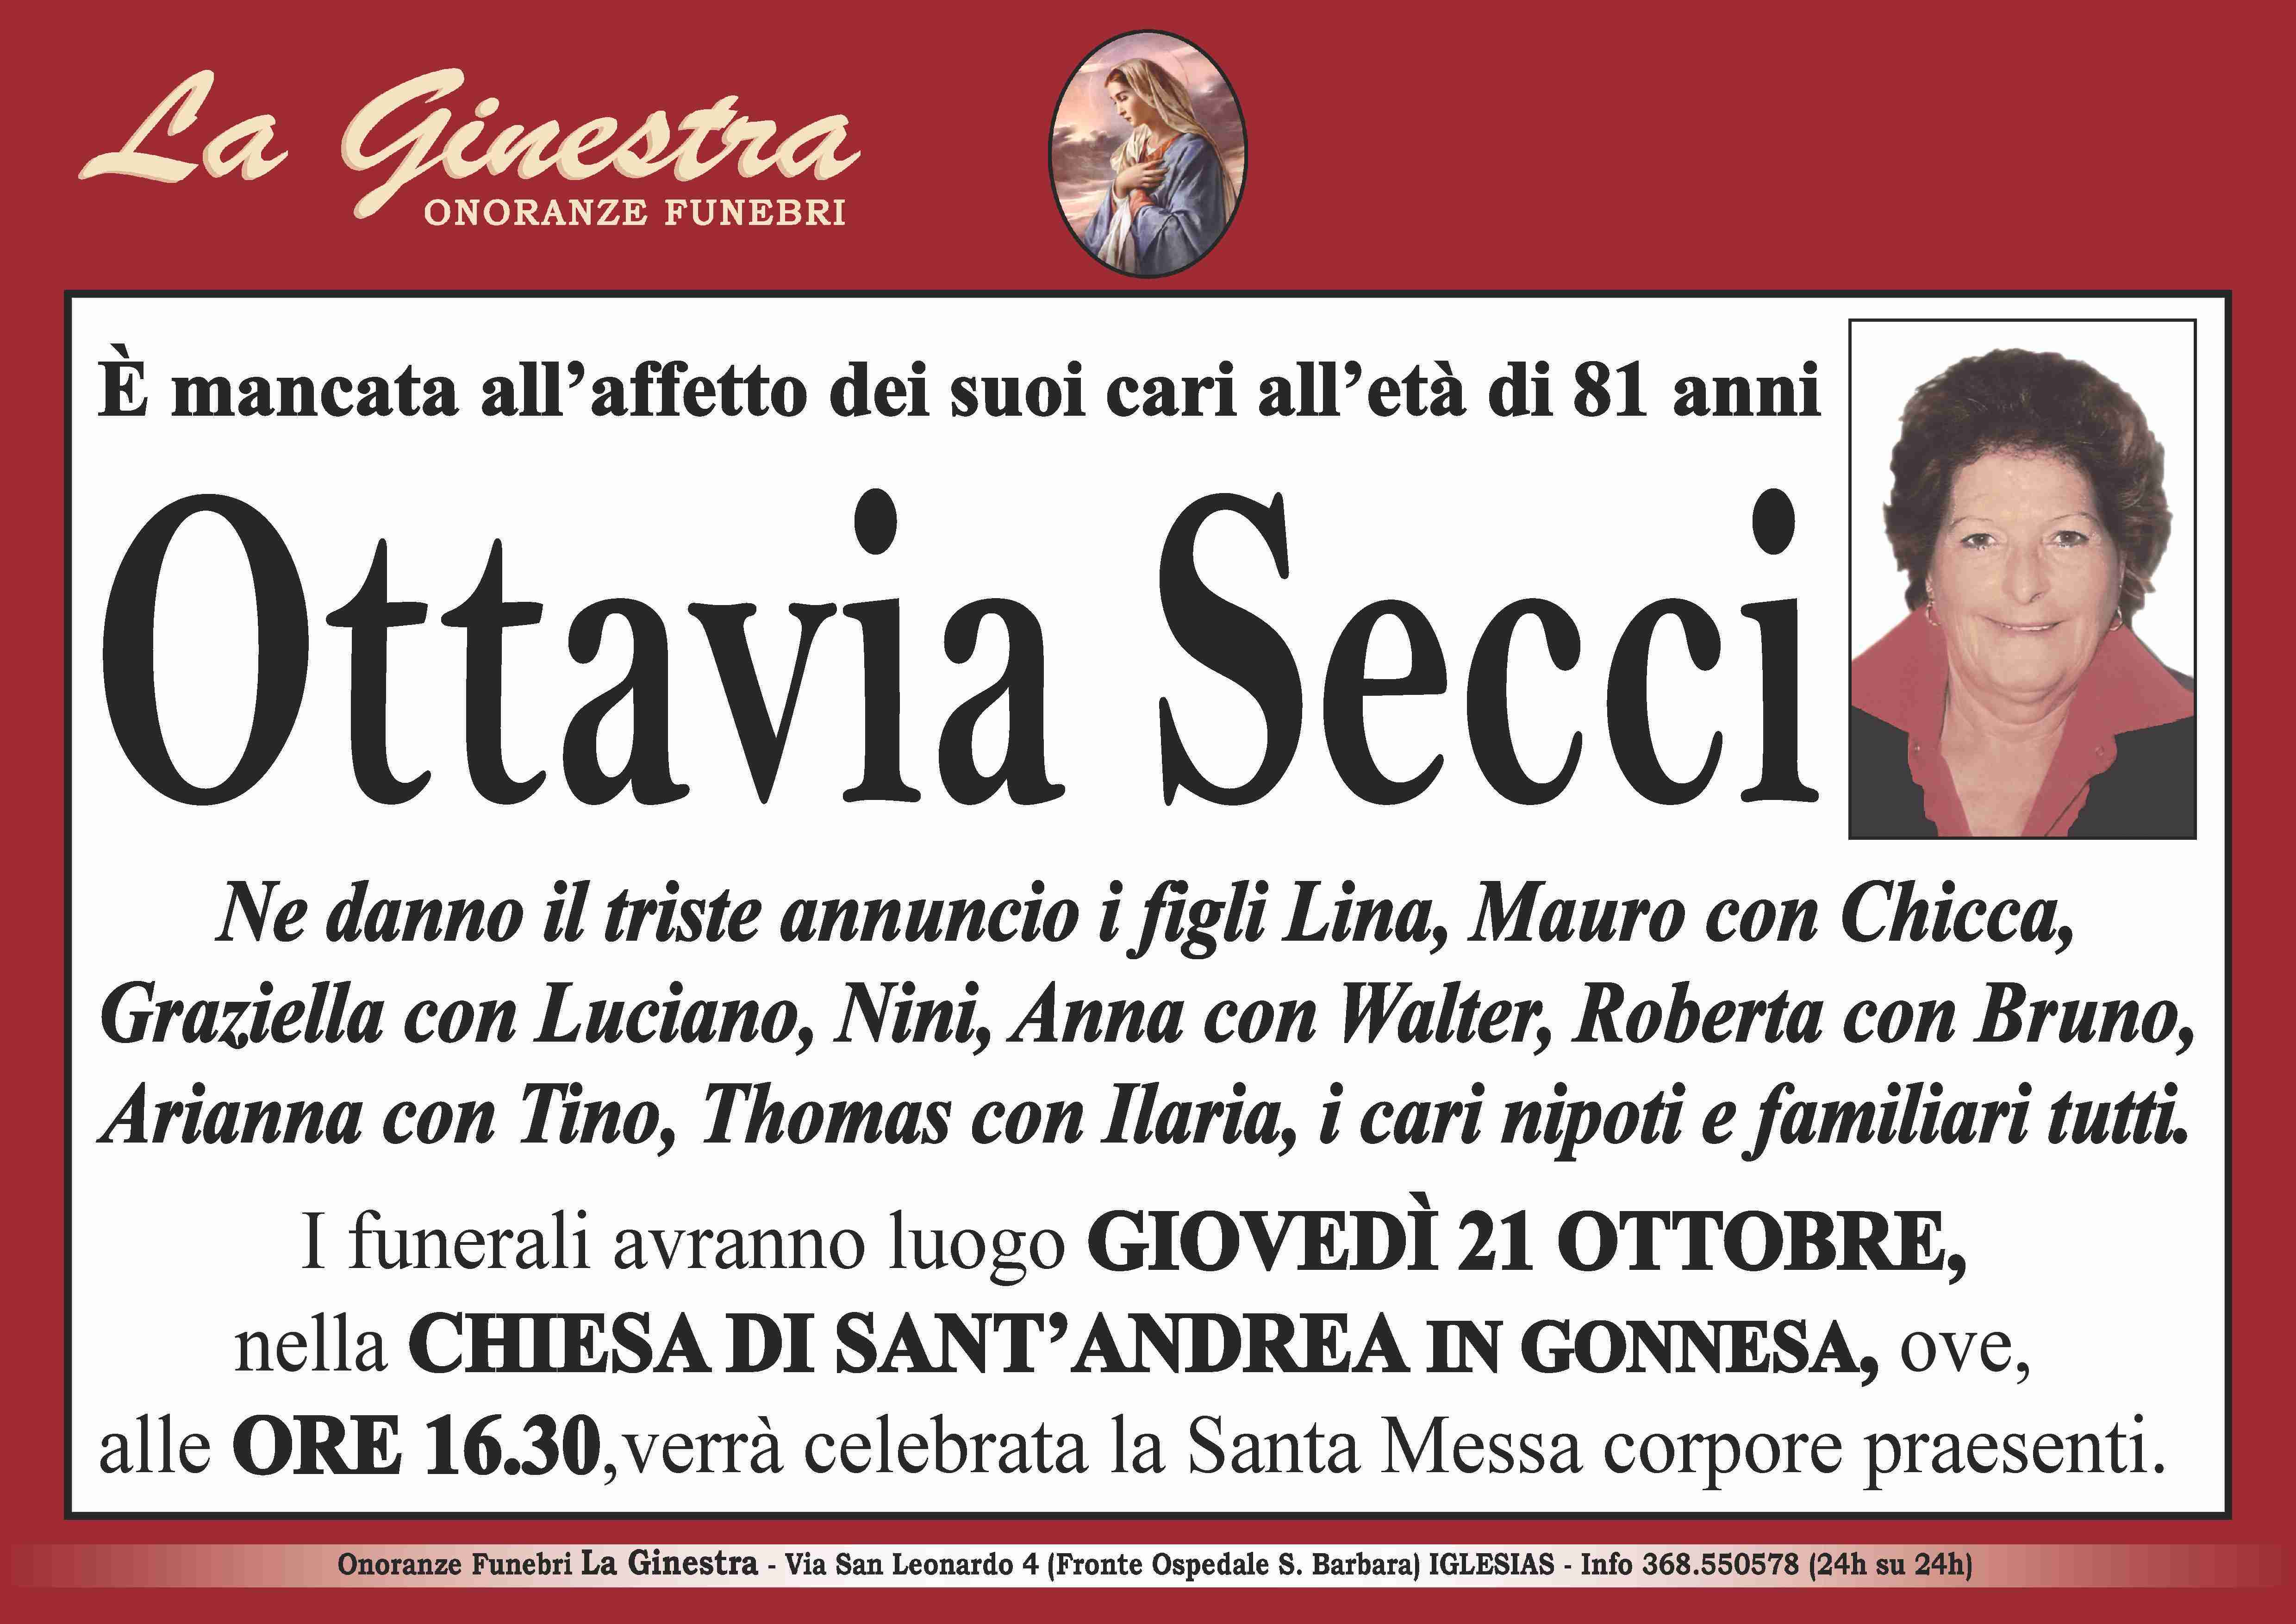 Ottavia Secci